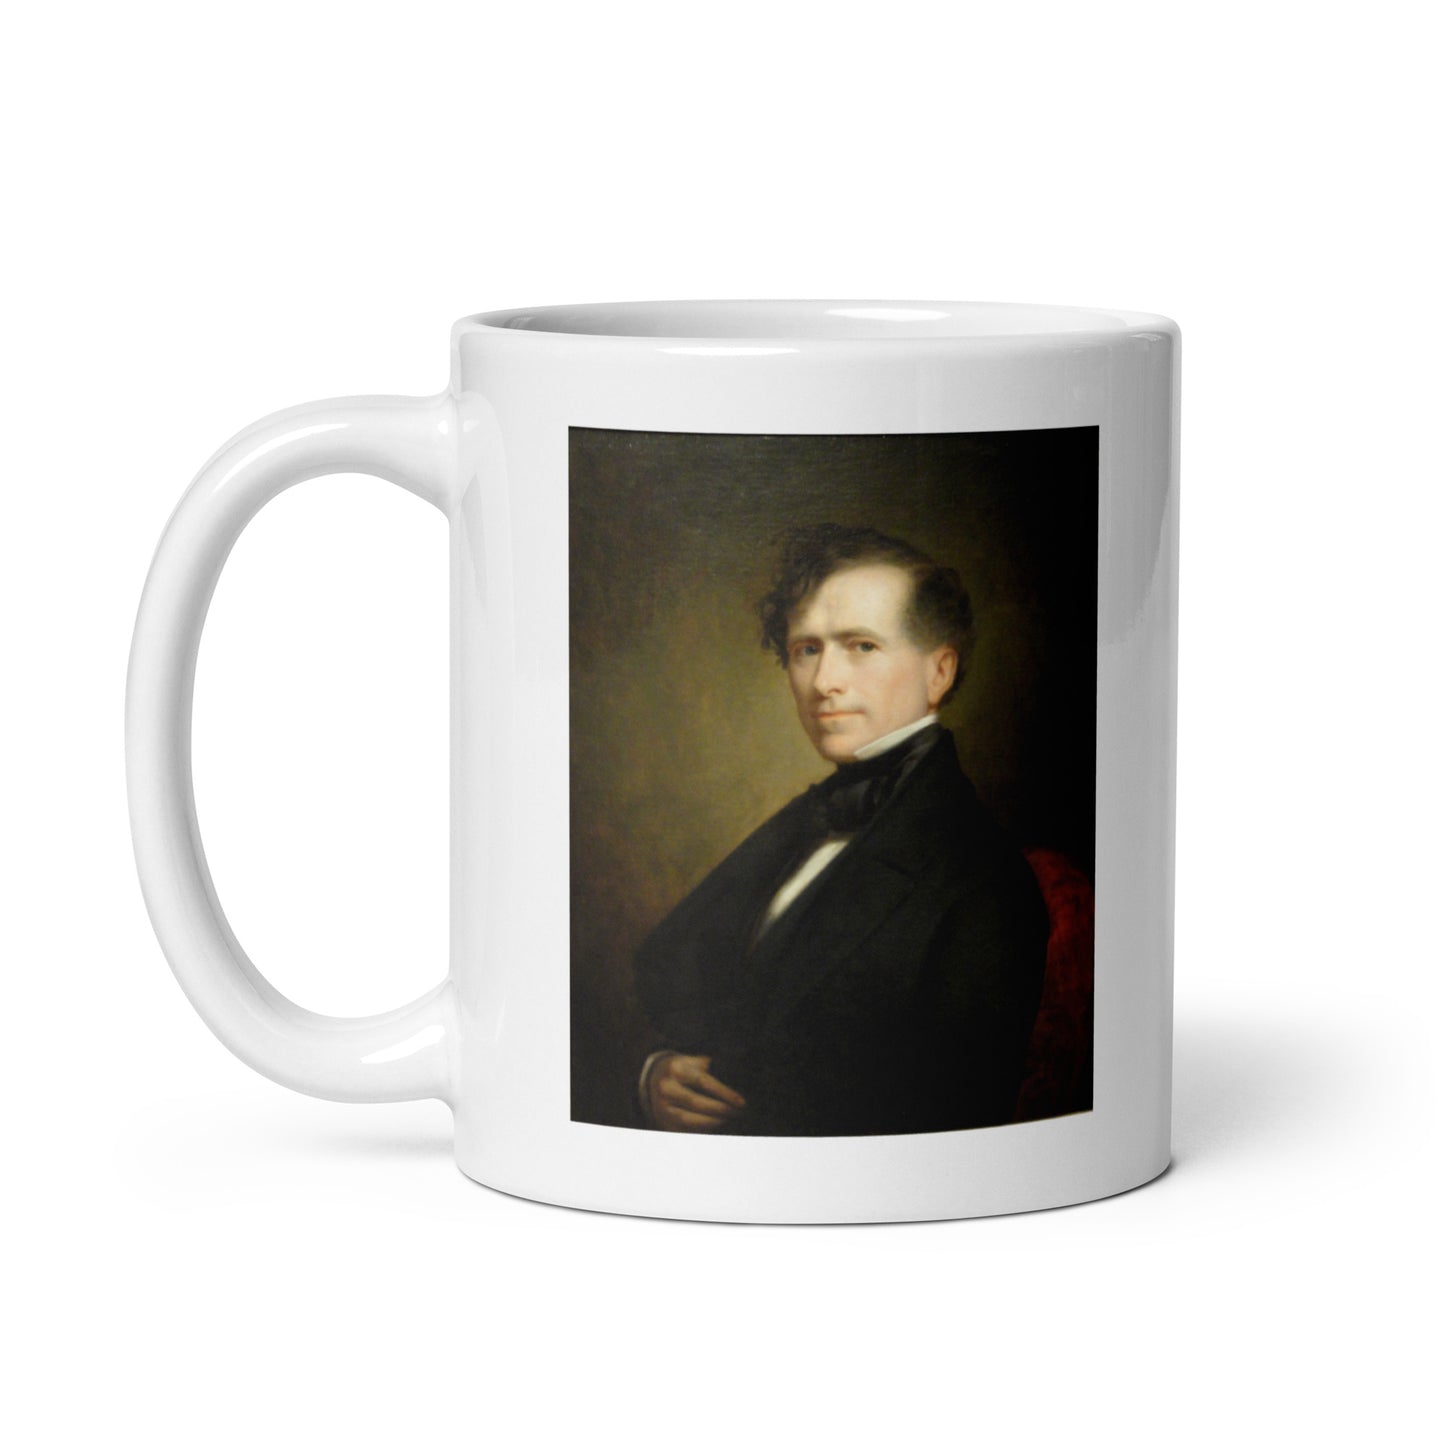 Franklin Pierce white glossy mug